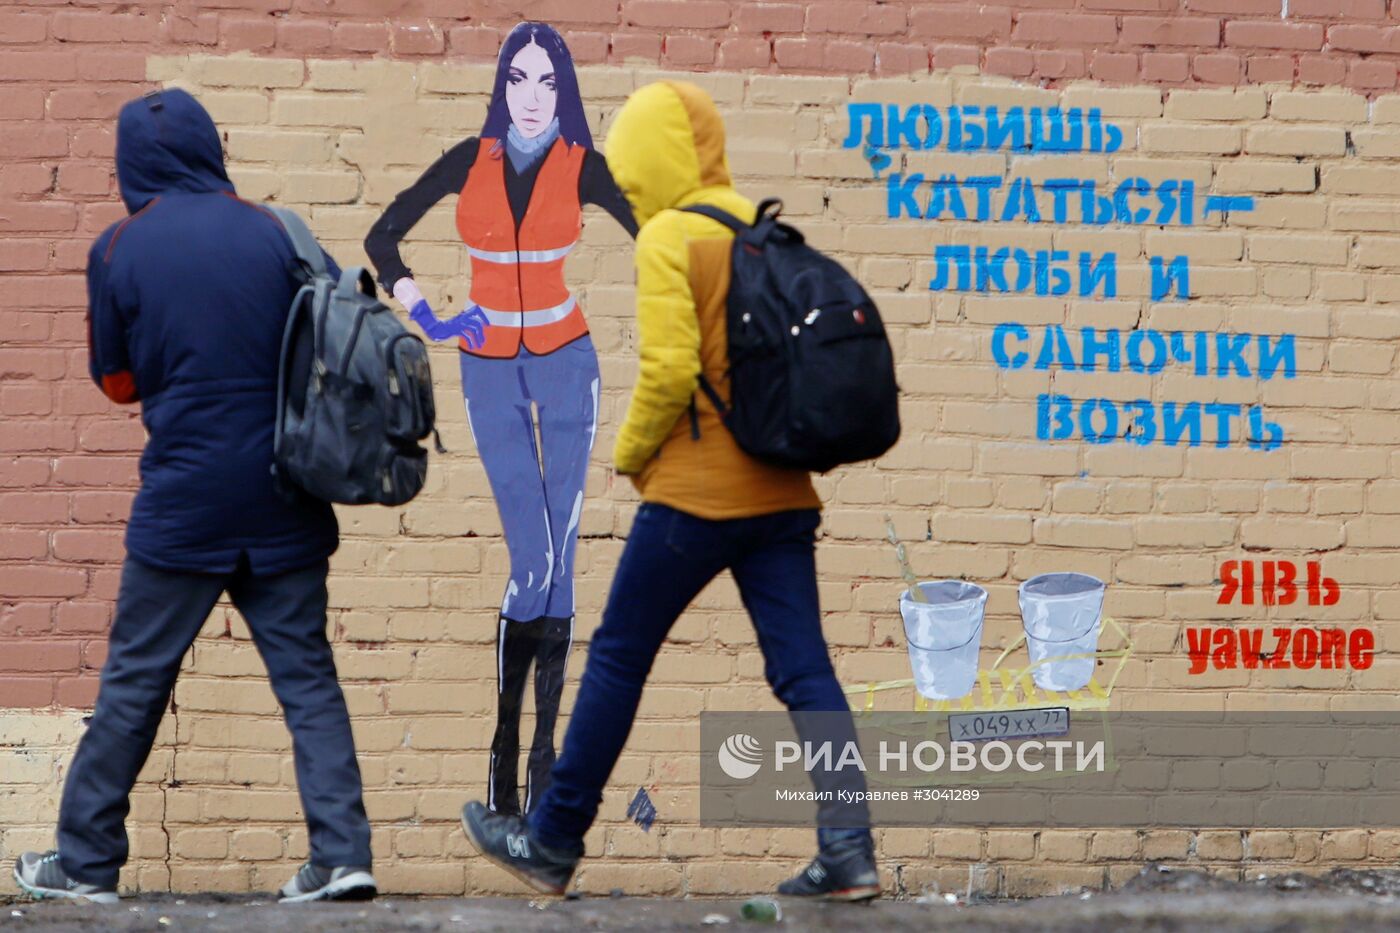 В Петербурге появилось граффити с Марой Багдасарян в образе дворника